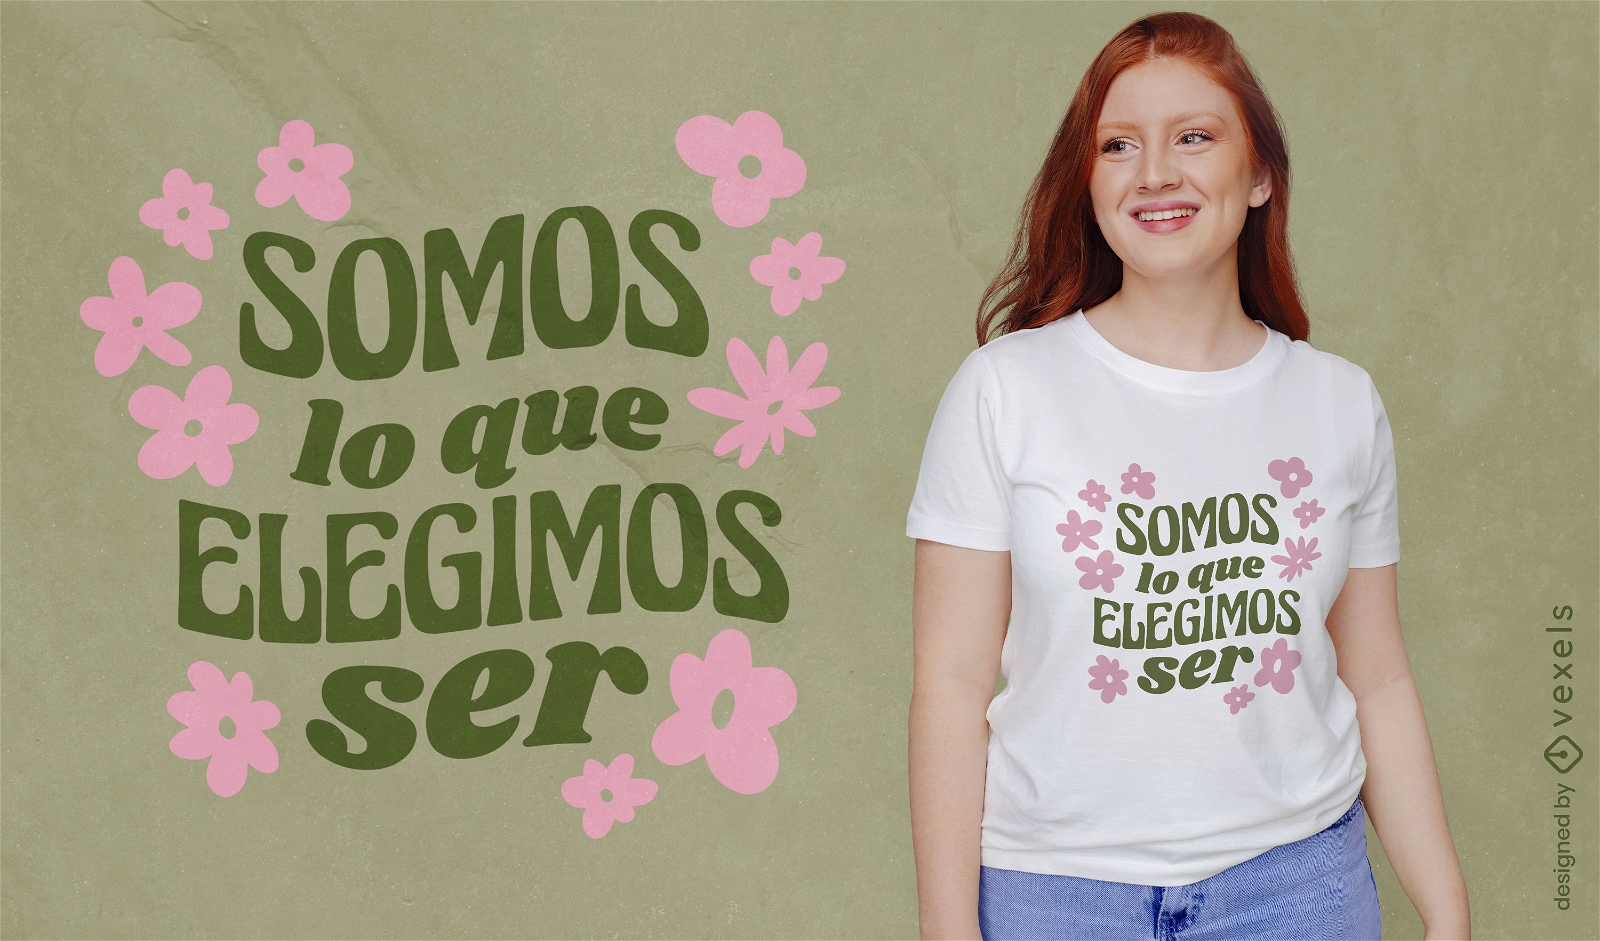 Diseño de camiseta con letras motivacionales florales en español.